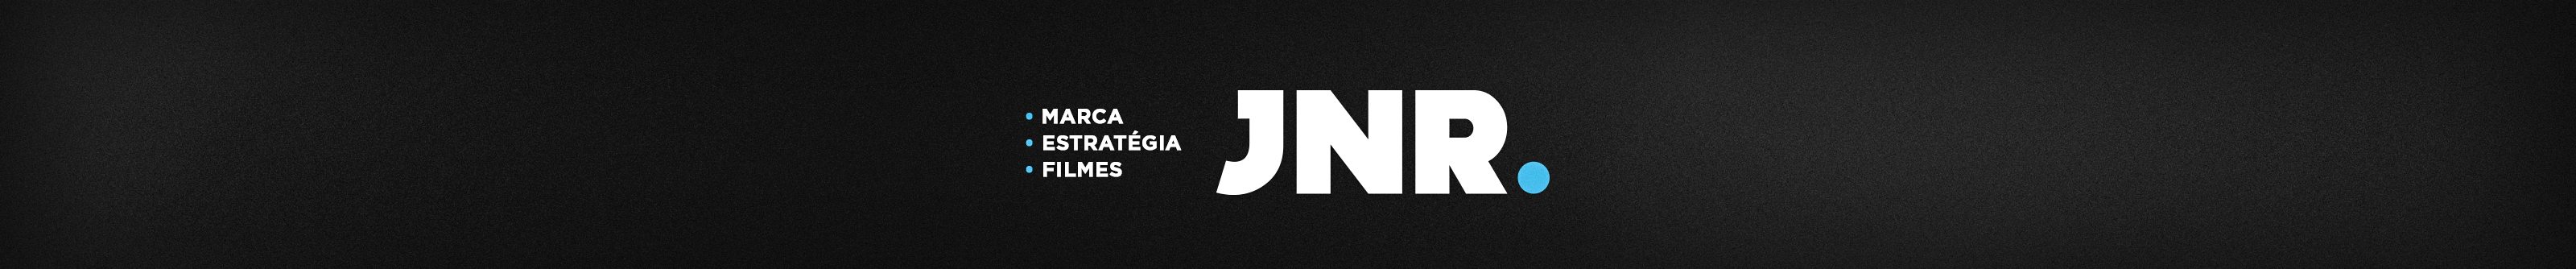 Banner de perfil de JNR .